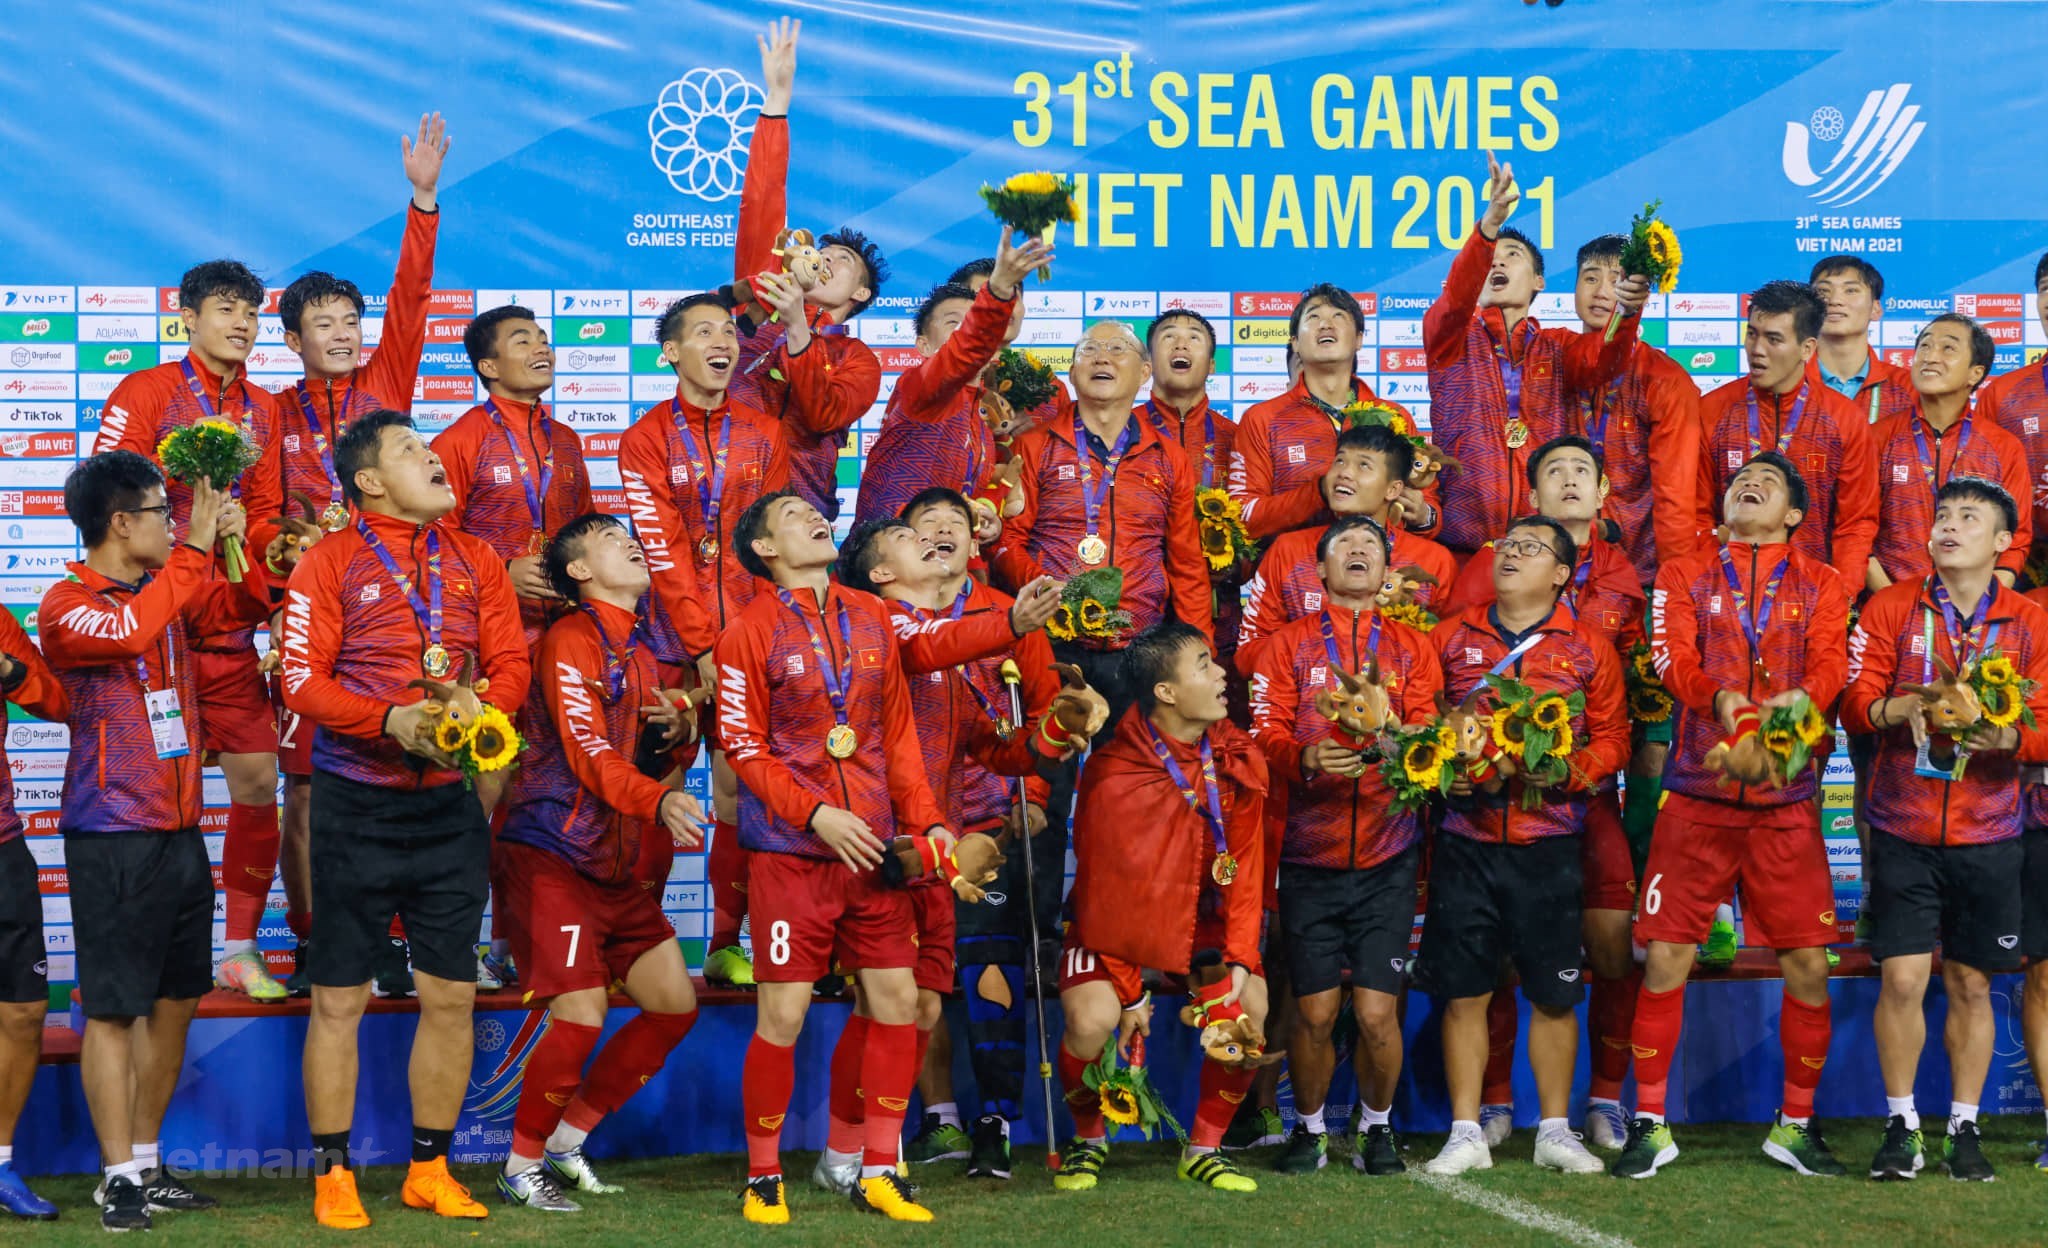 Hãy đến và thưởng thức những hình ảnh tuyệt đẹp của đội tuyển U23 Việt Nam tại SEA Games